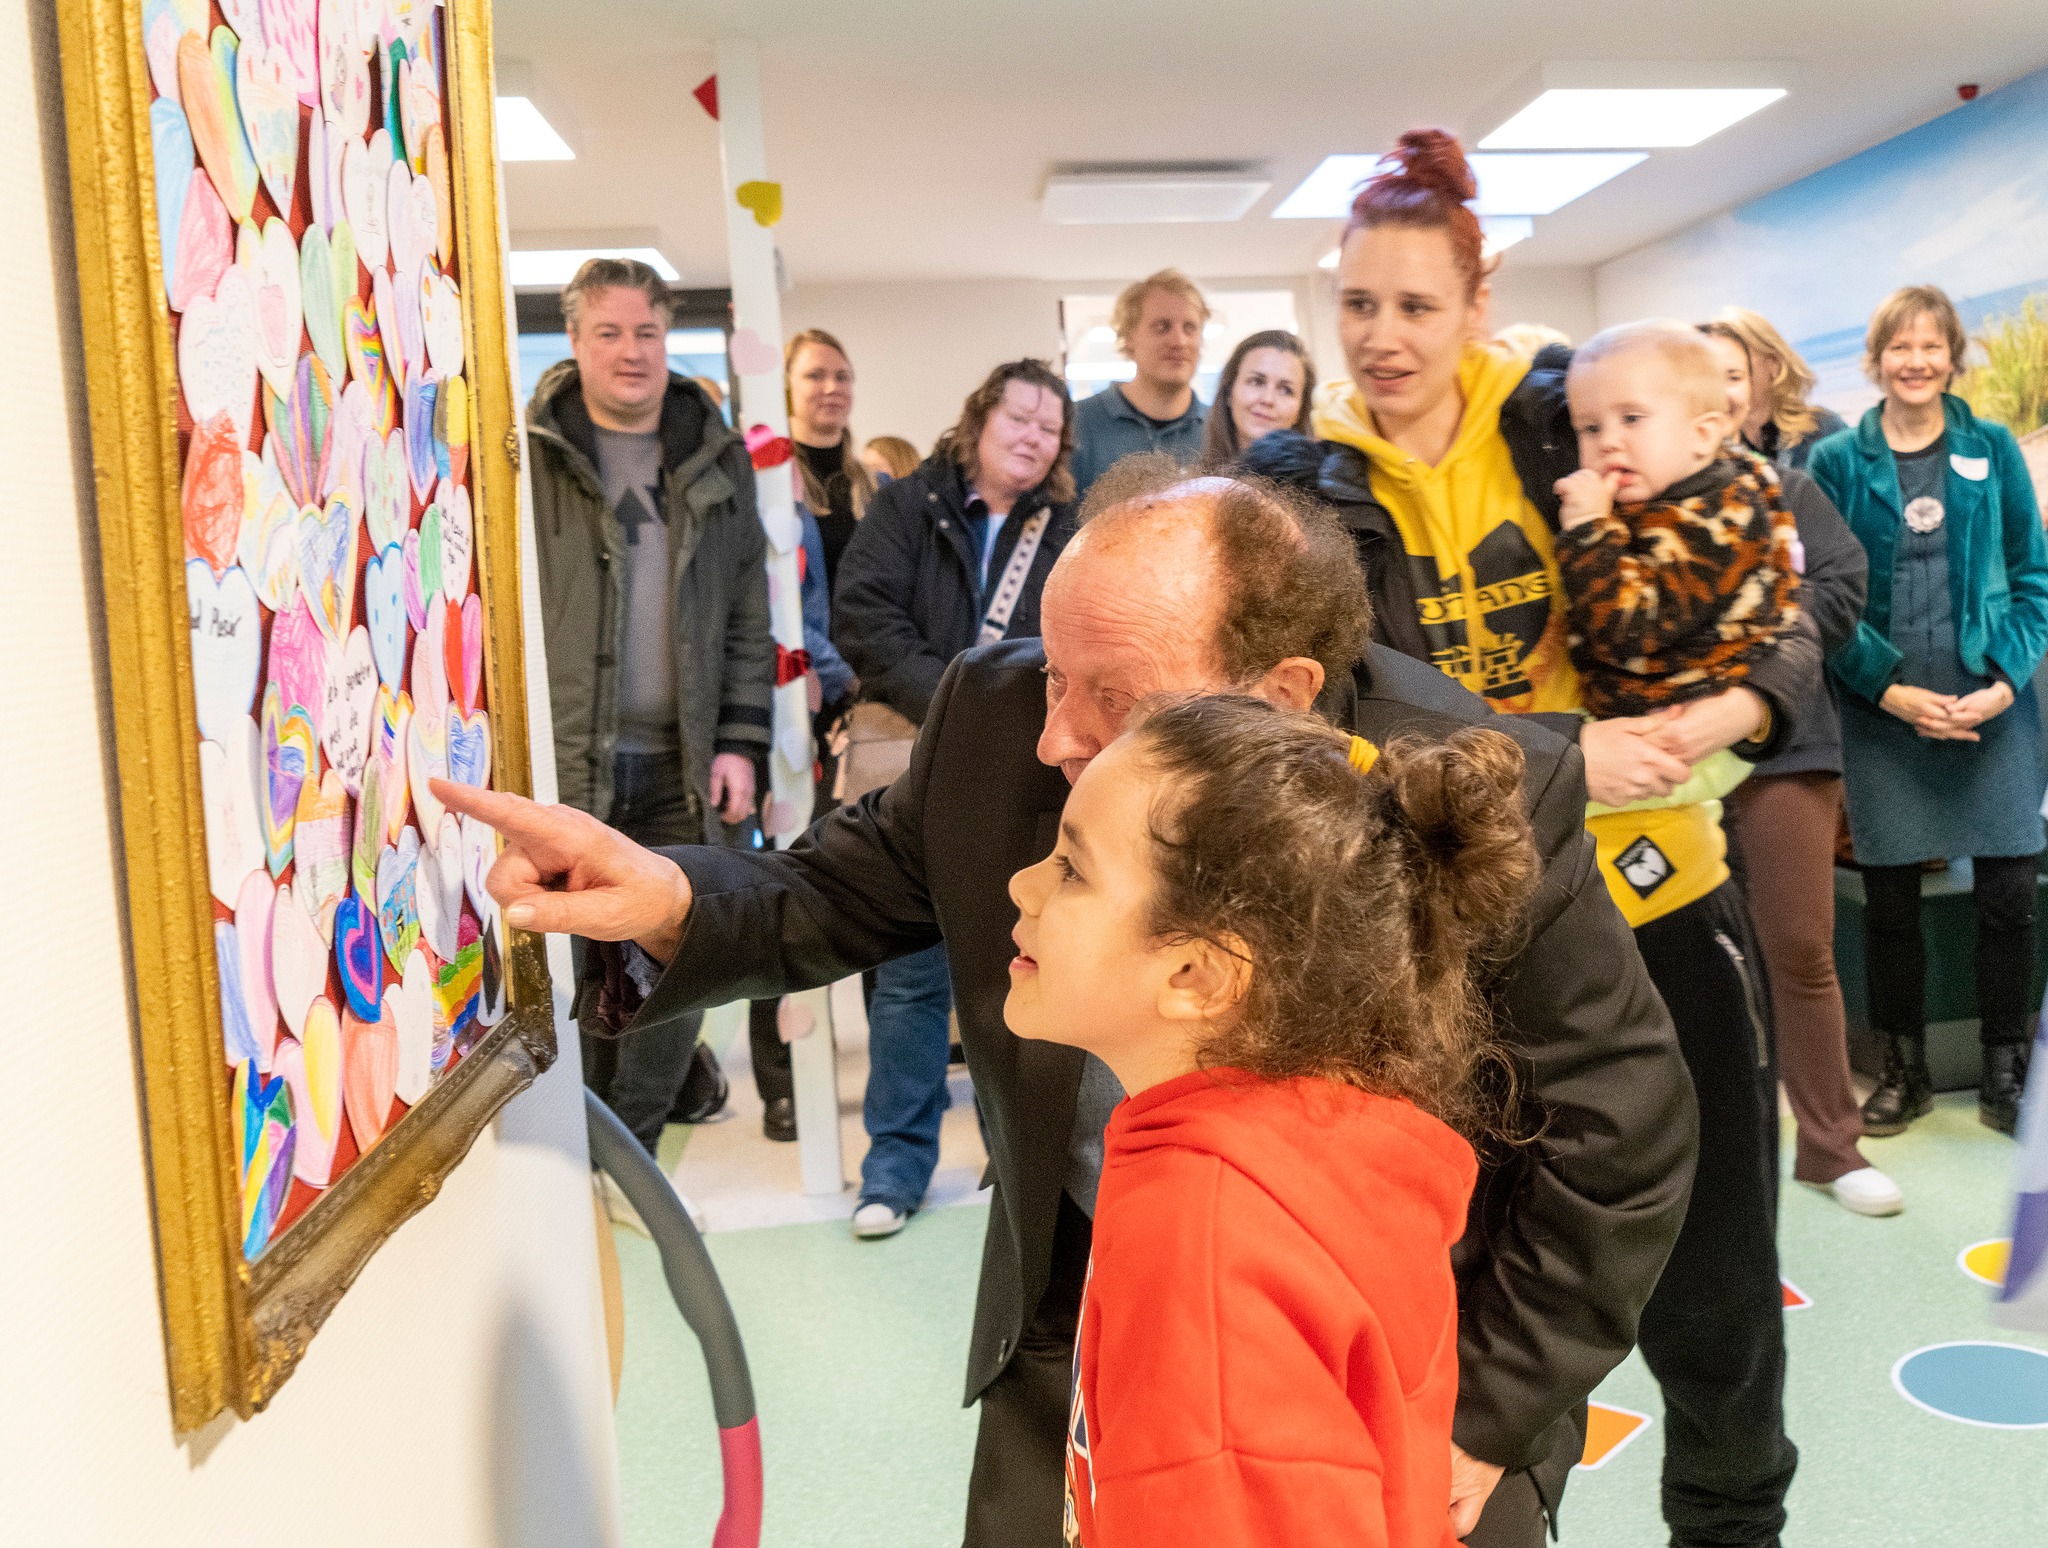 Foto van kind en wethouder Alkmaar bij de onthulling van kunstwerk gemaakt door schoolkinderen - lijst met papieren hartjes - ter gelegenheid opening nieuwe locatie CJG Zuid